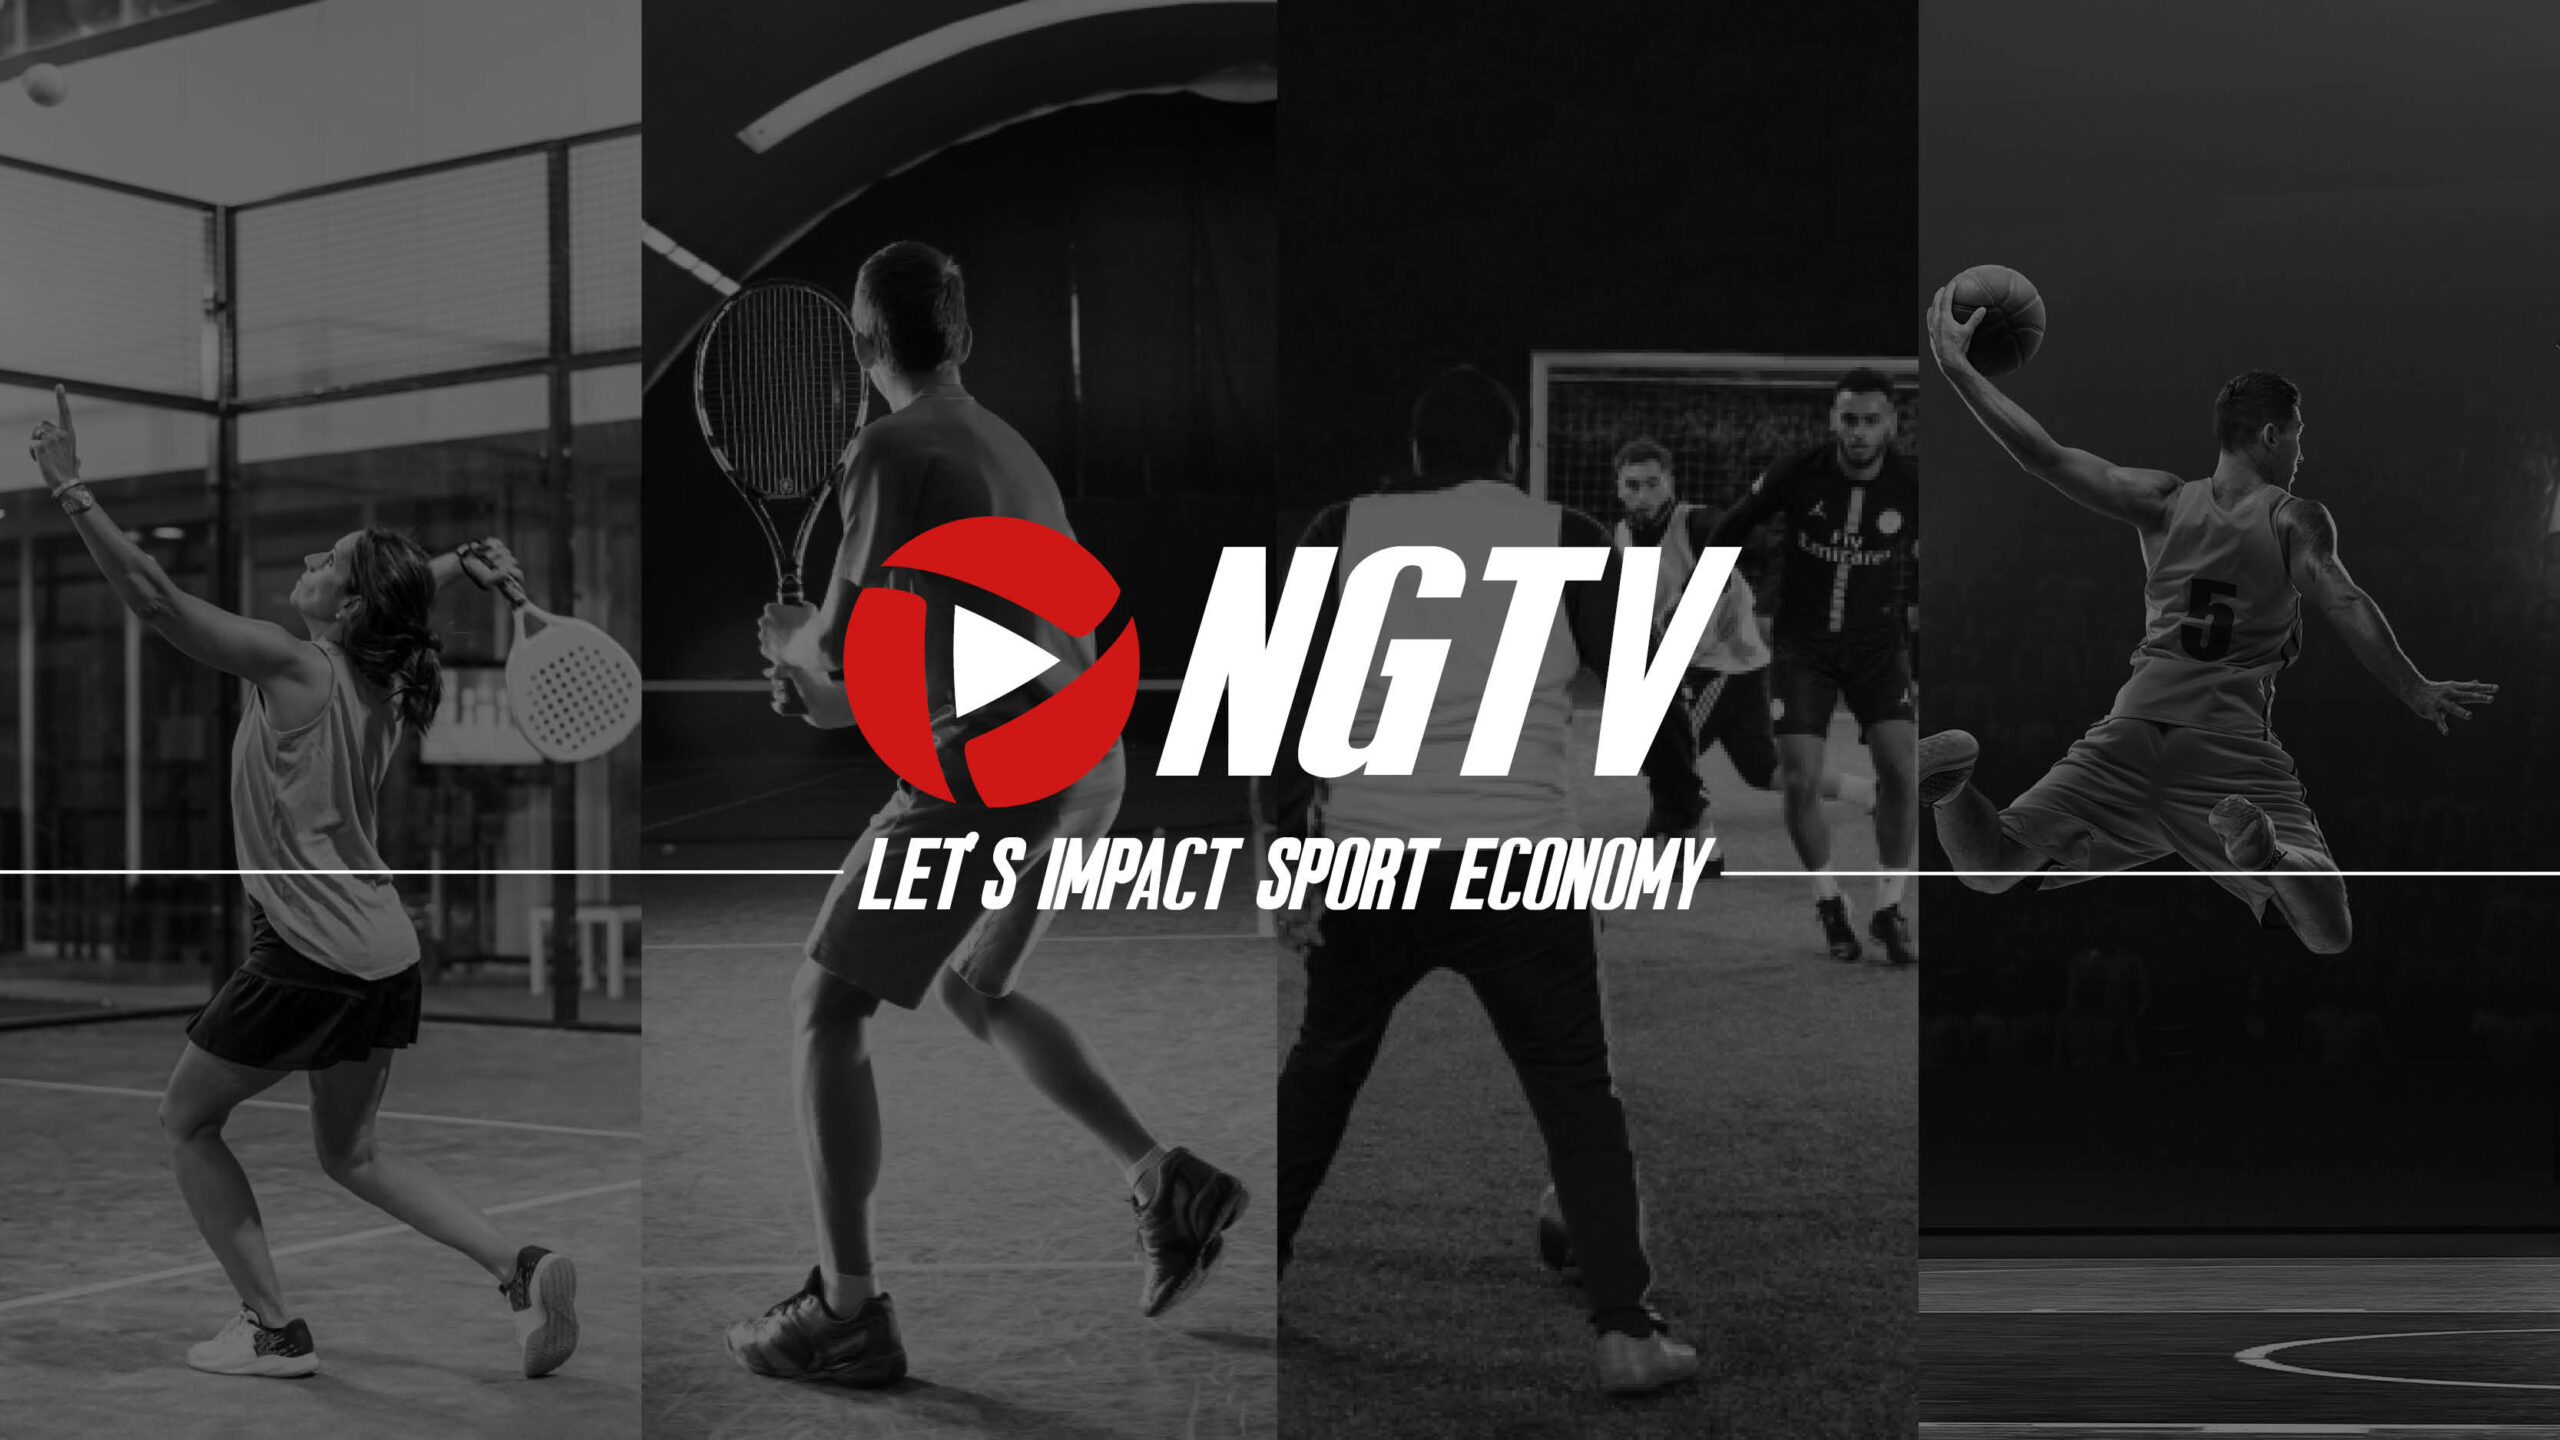 El objetivo de NGTV: ¡impactar la economía del deporte!